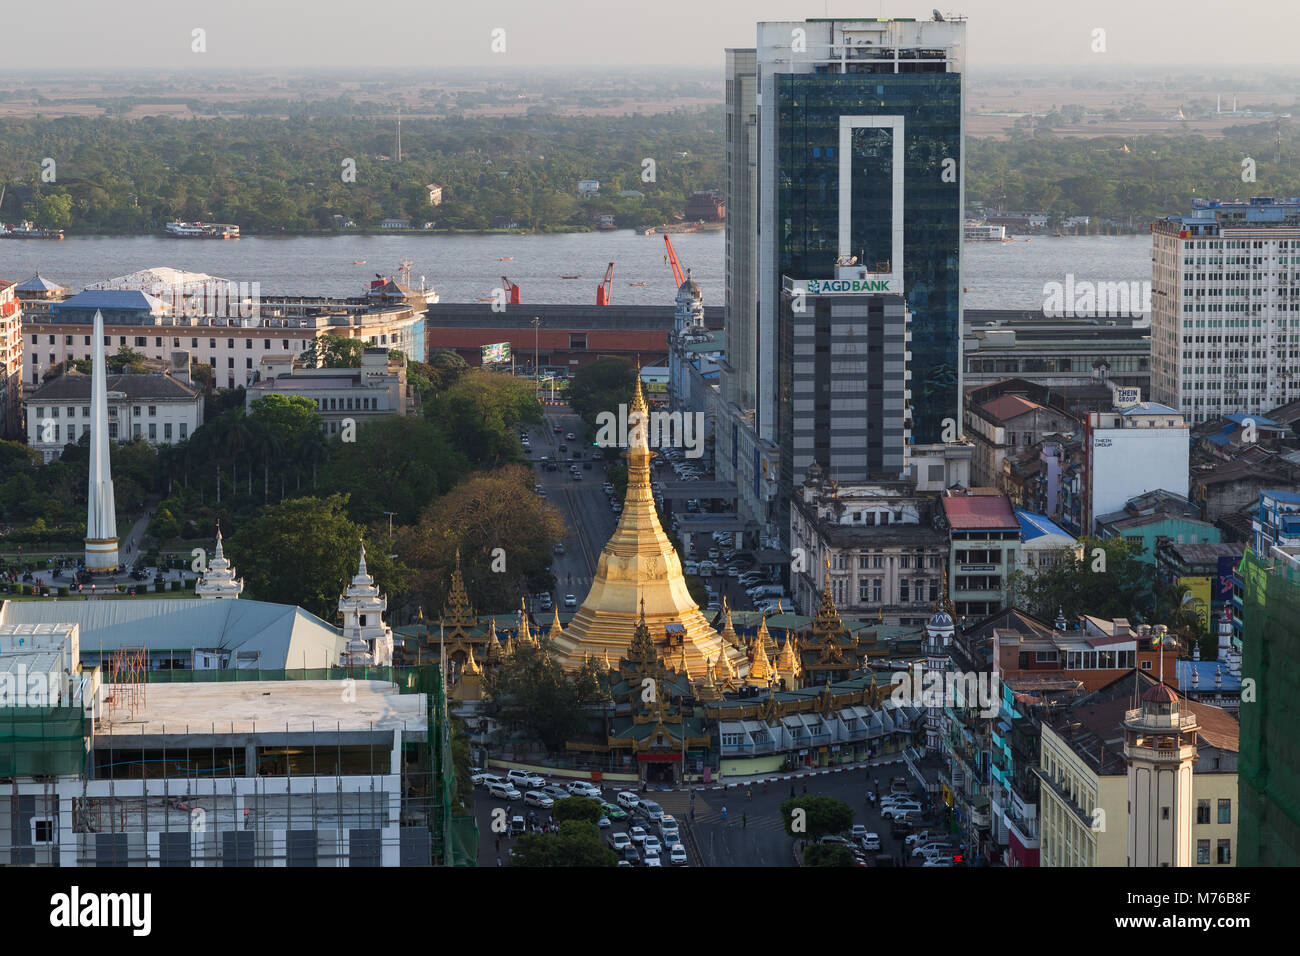 Edifici, indipendenza monumento, Sule Pagoda e Sule Pagoda Road nel centro di Yangon (Rangoon), Myanmar (Birmania) visto dal di sopra in condizioni di luce diurna. Foto Stock